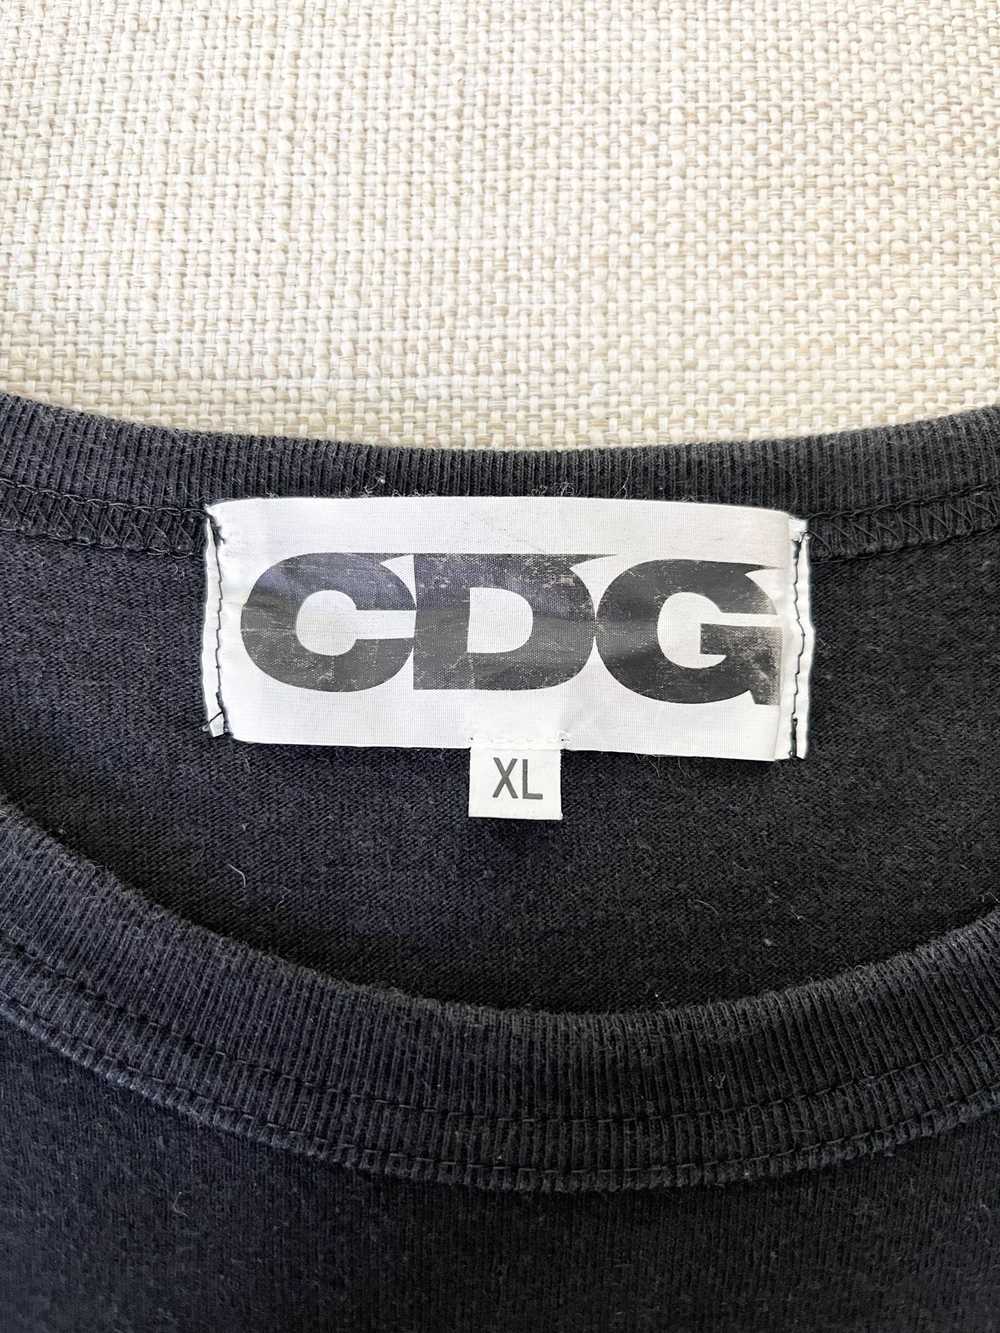 CDG CDG CDG × Comme des Garcons × Japanese Brand … - image 6